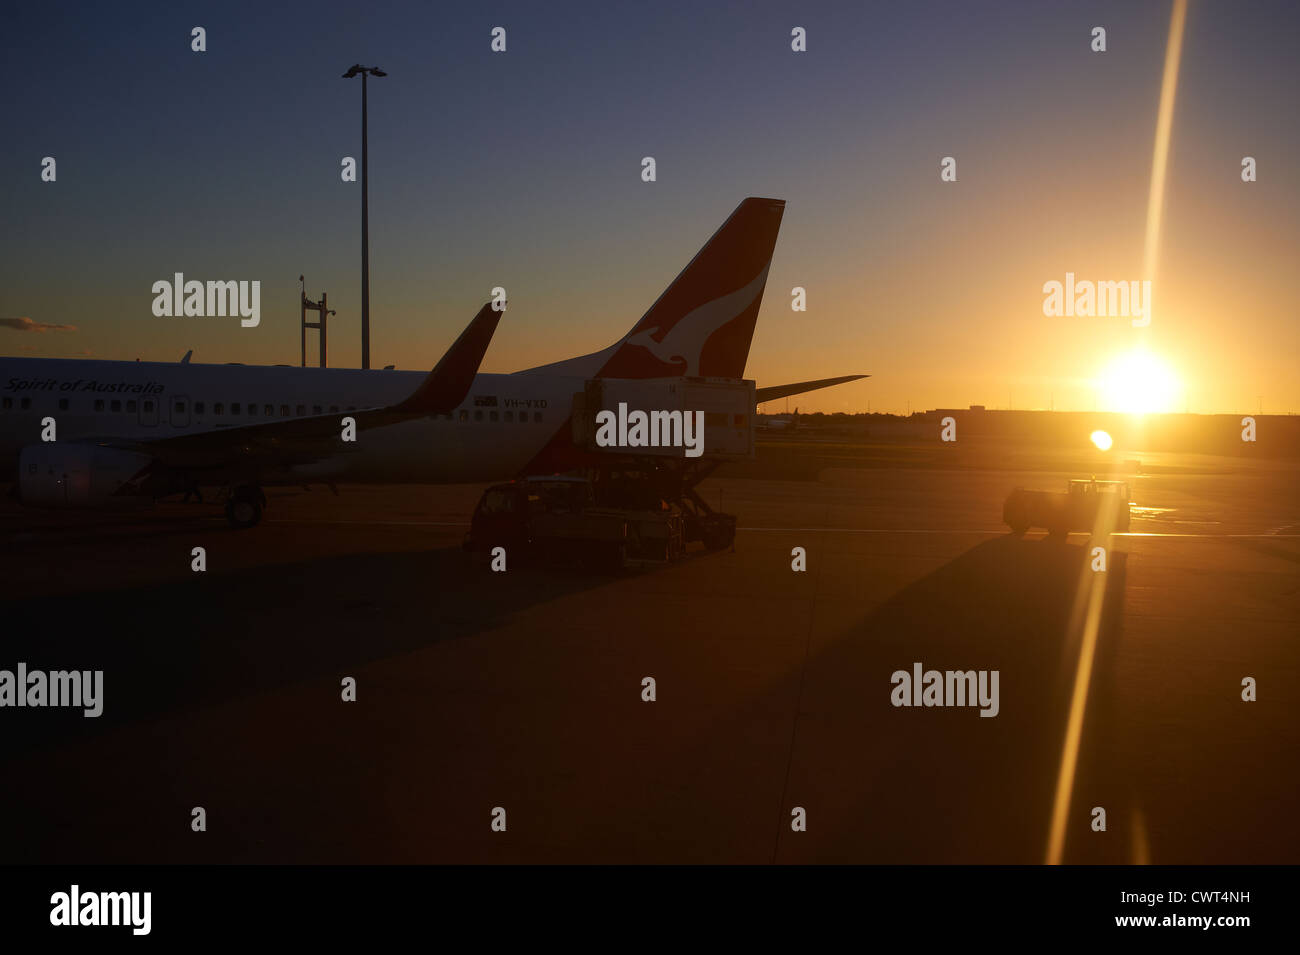 Avions Qantas en silhouette sur le tarmac de l'aéroport de Brisbane Australie terminal Banque D'Images